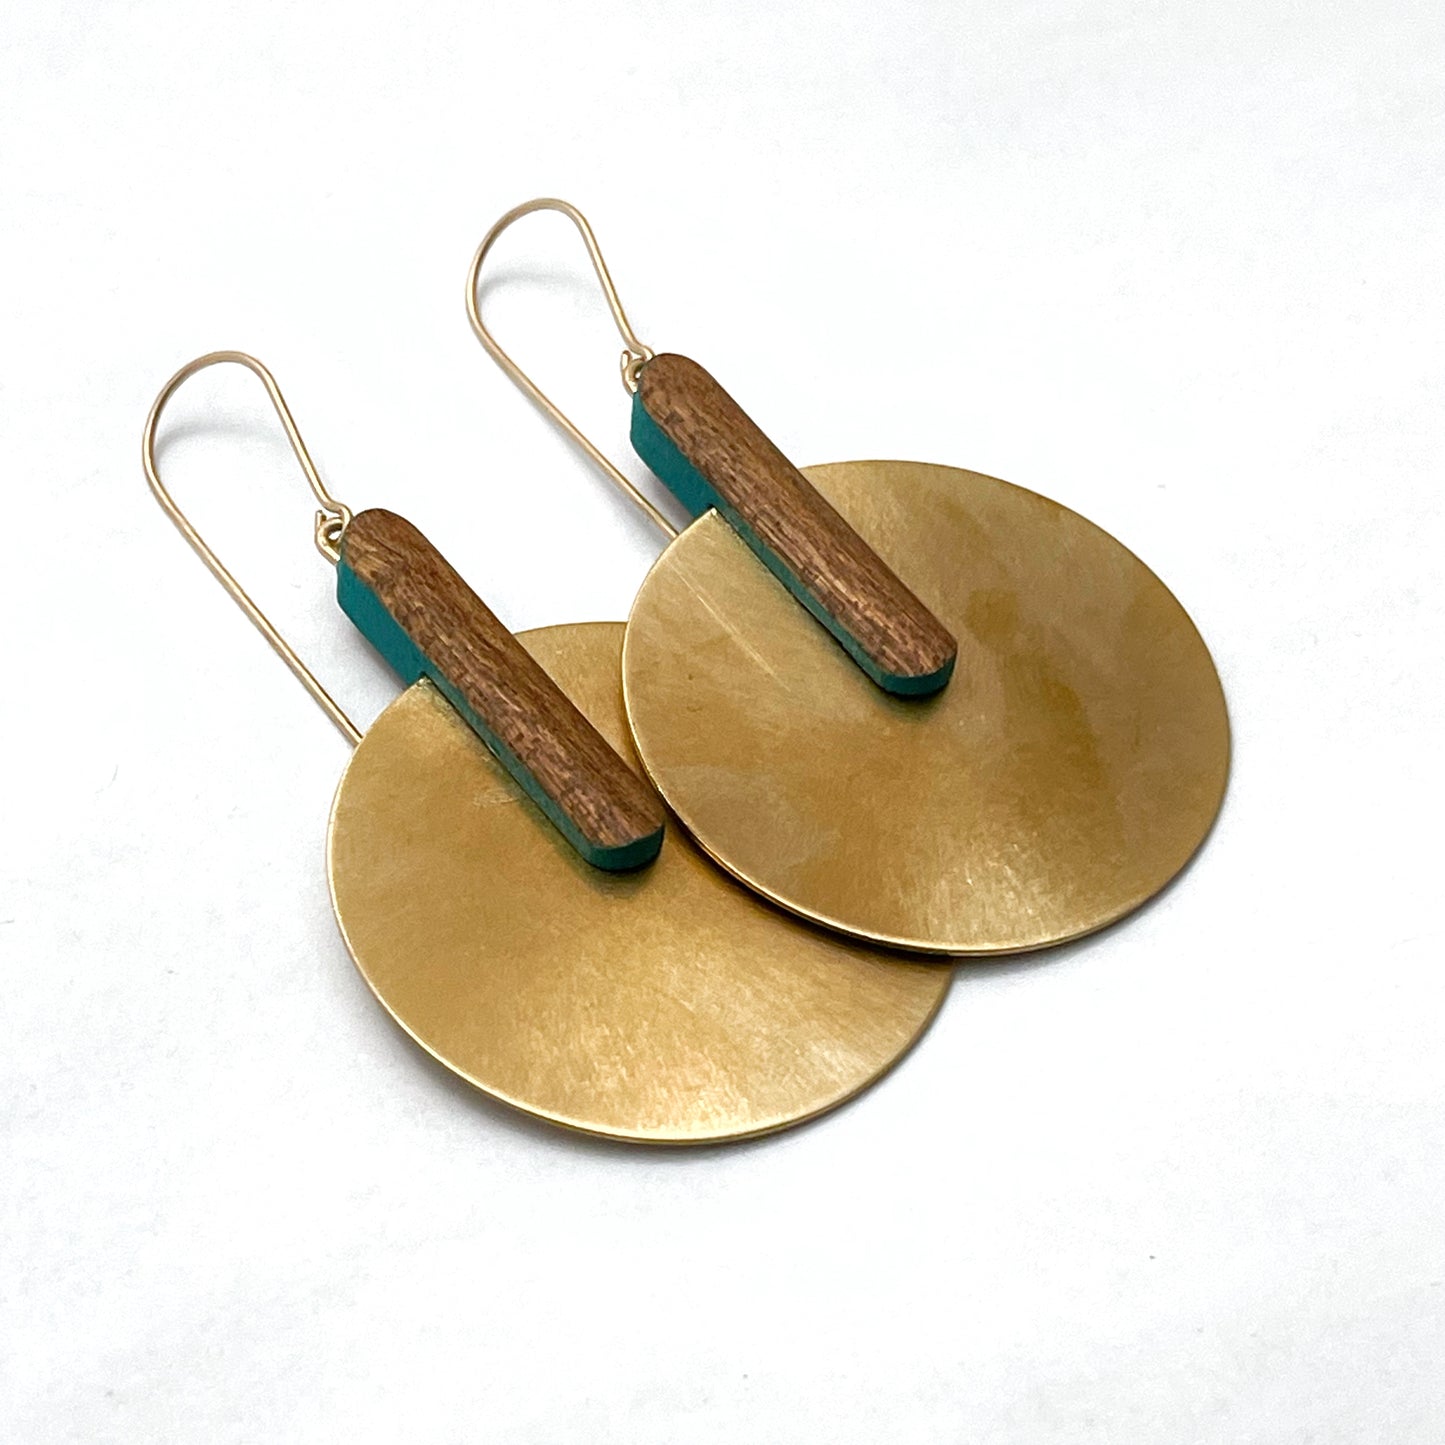 Satellite earrings